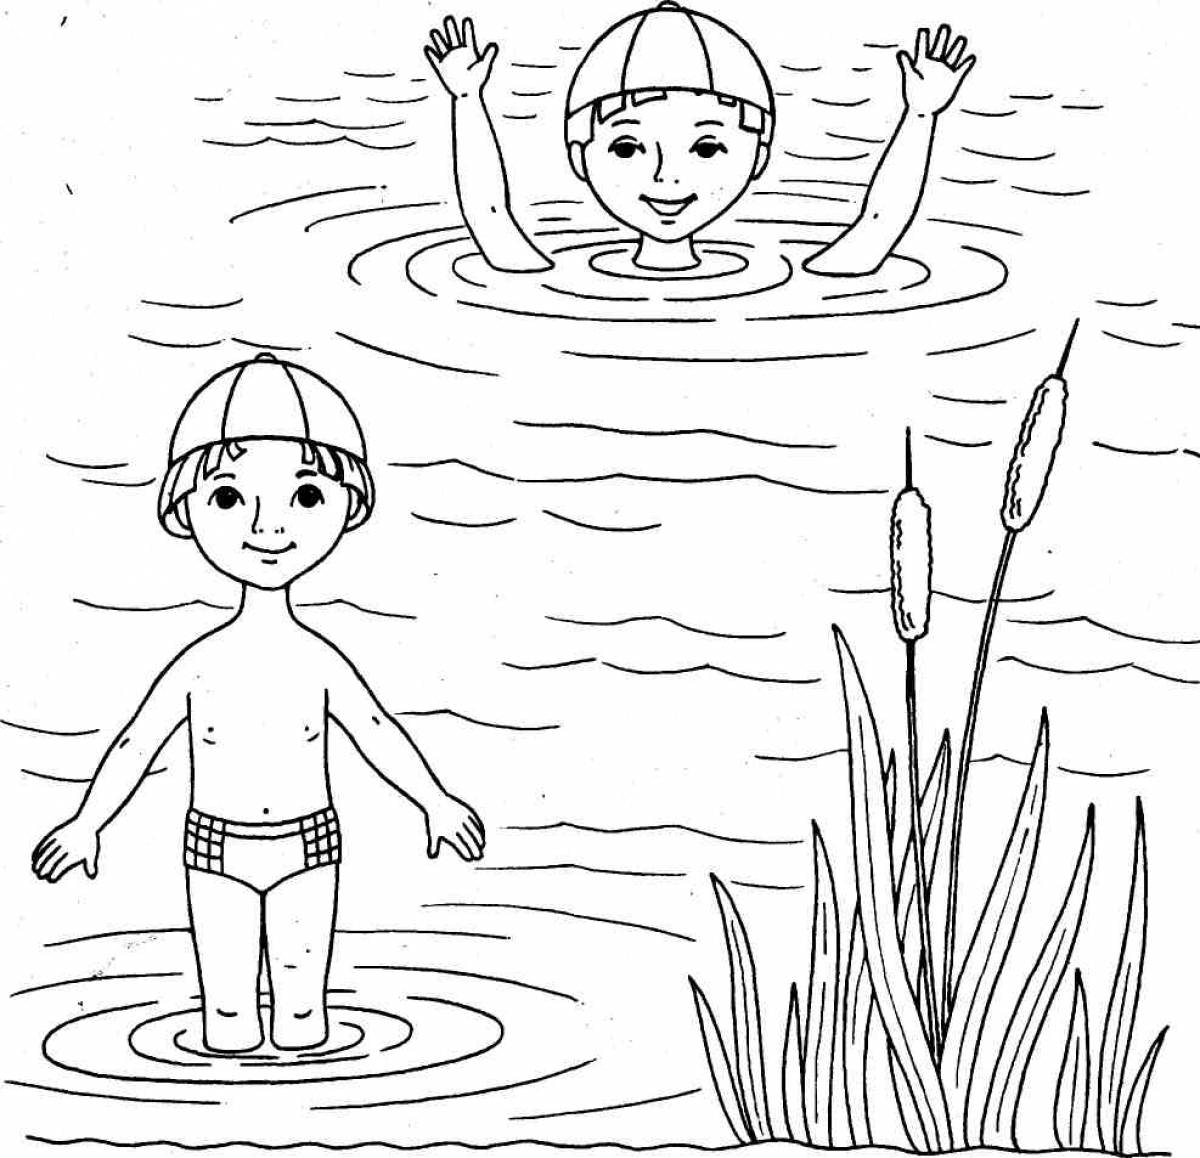 Дети на пруду